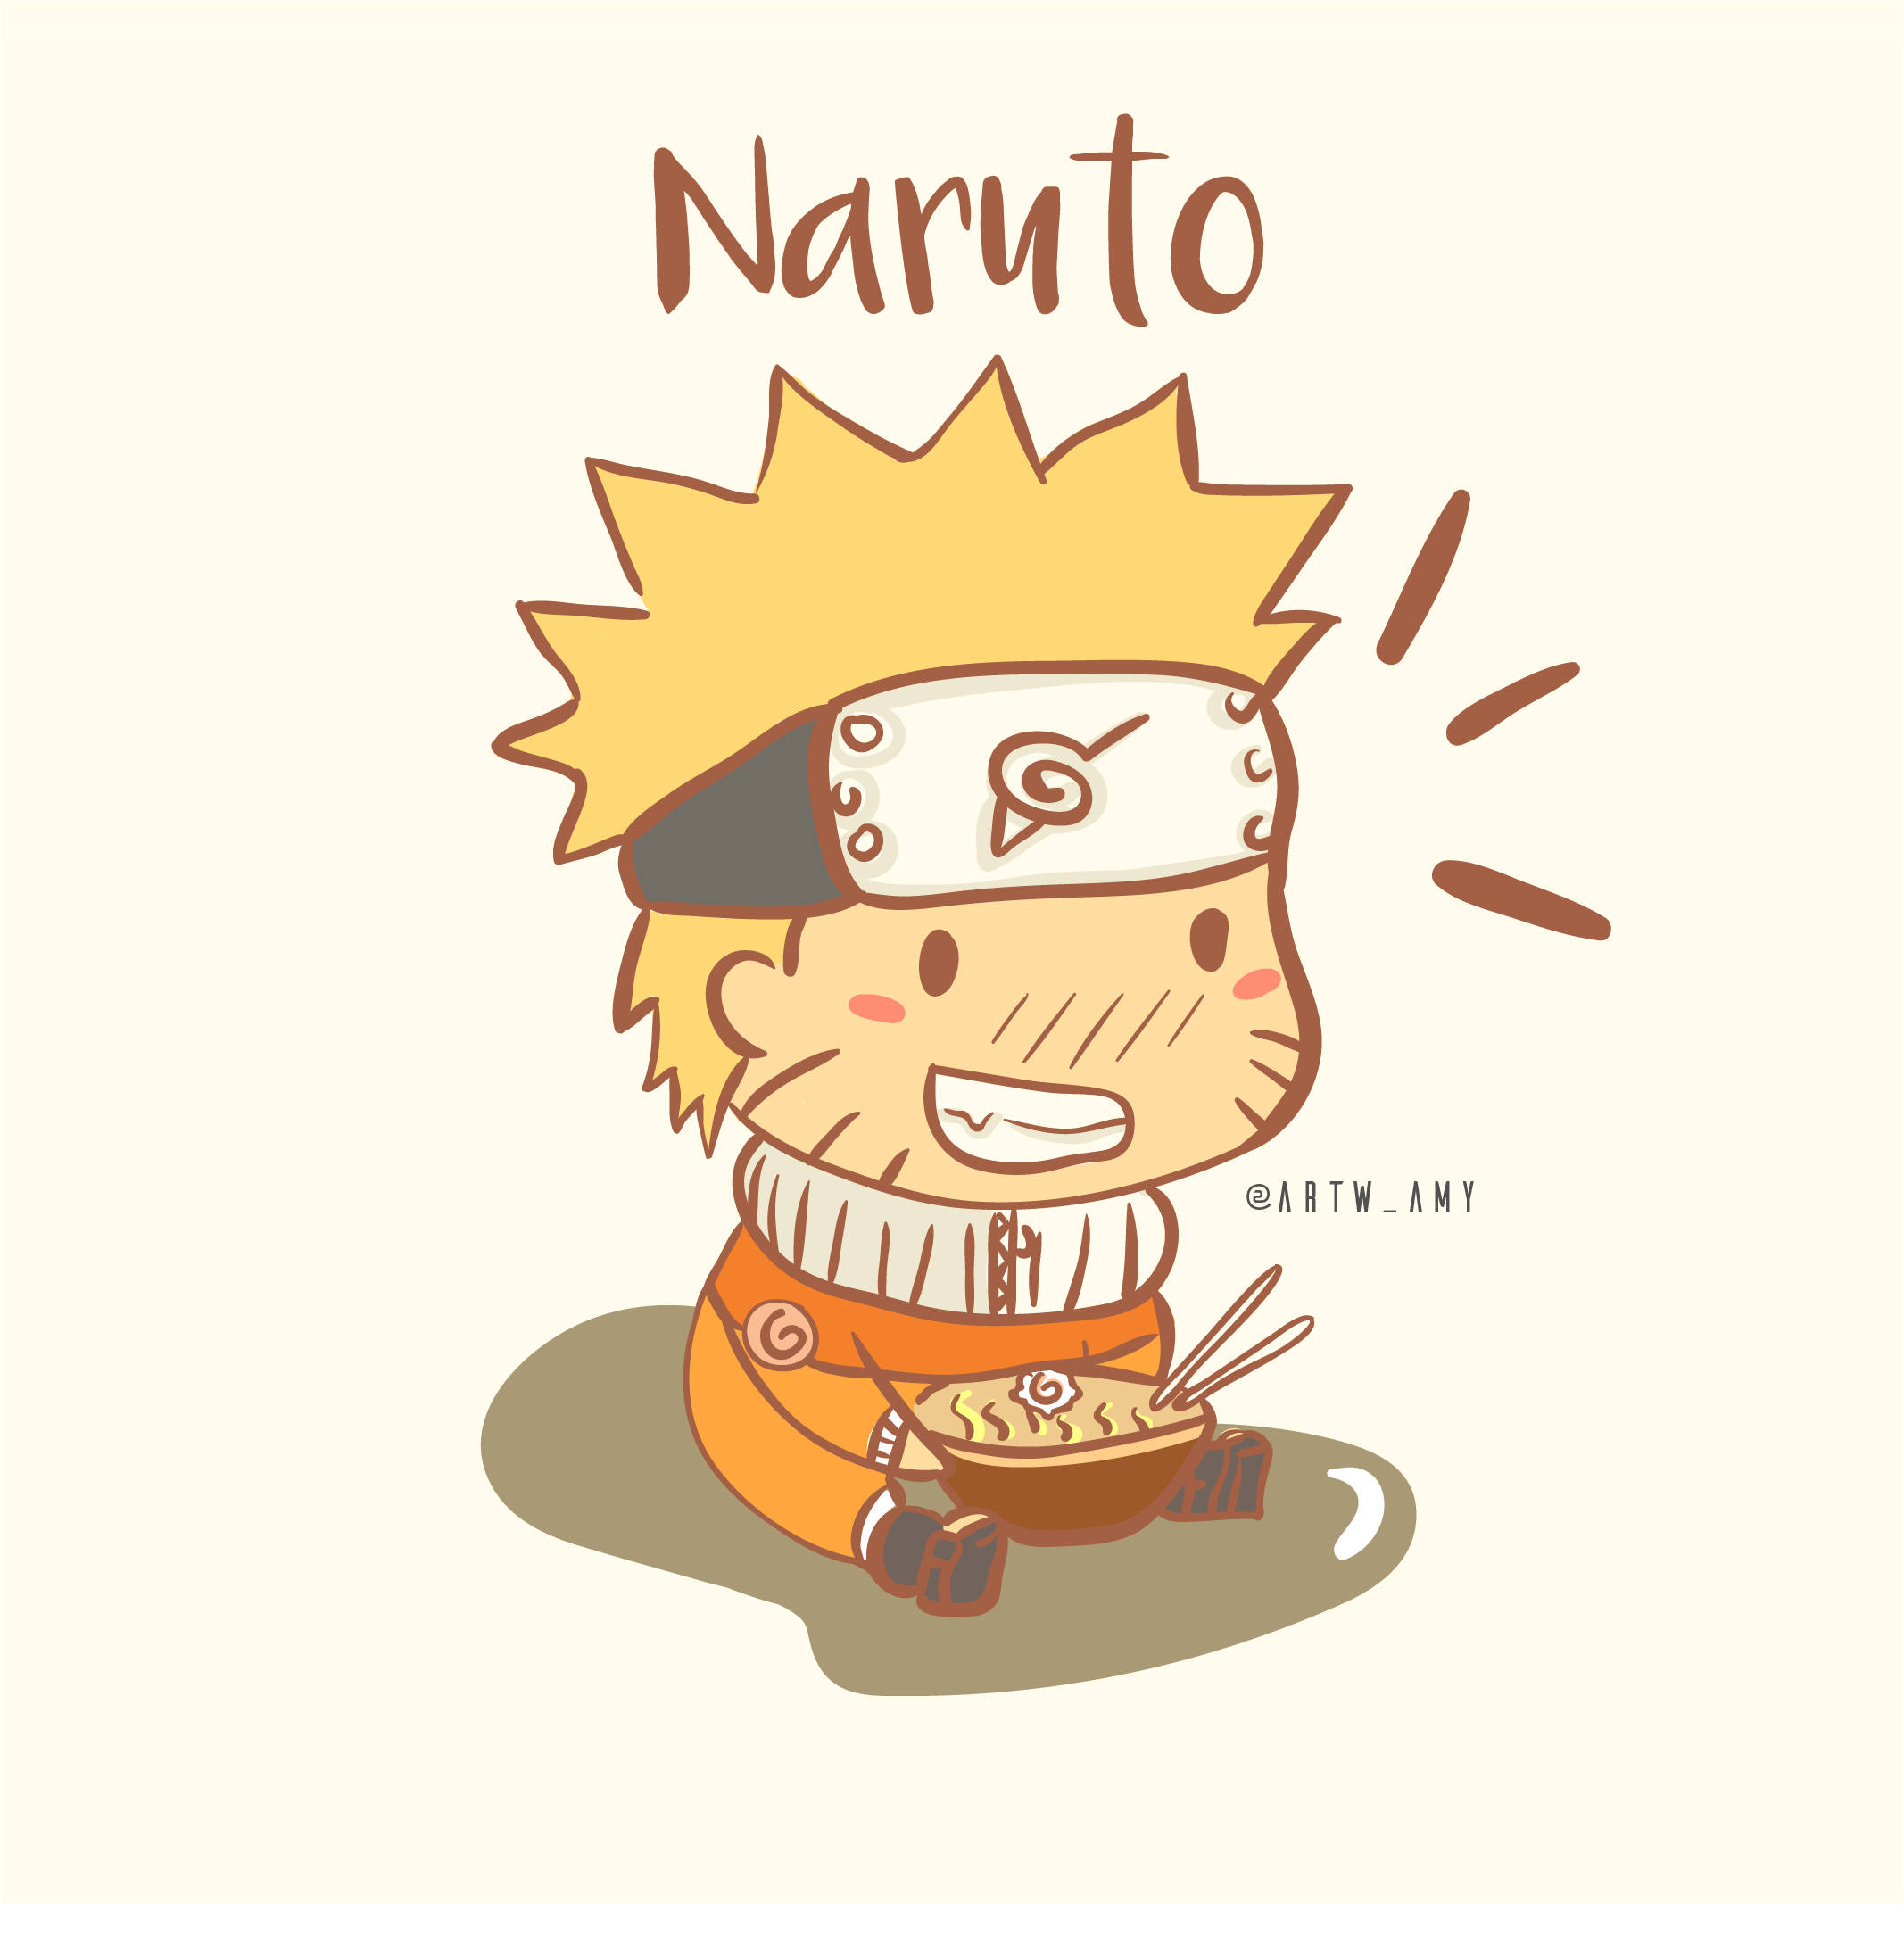 Naruto Chibi là một loại hình nghệ thuật rất được ưa chuộng. Được phổ biến rộng rãi trên toàn thế giới, Naruto Chibi mang lại cảm giác vui nhộn và dễ chịu. Hãy khám phá thế giới Naruto Chibi và tìm kiếm những bức ảnh đáng yêu nhé.